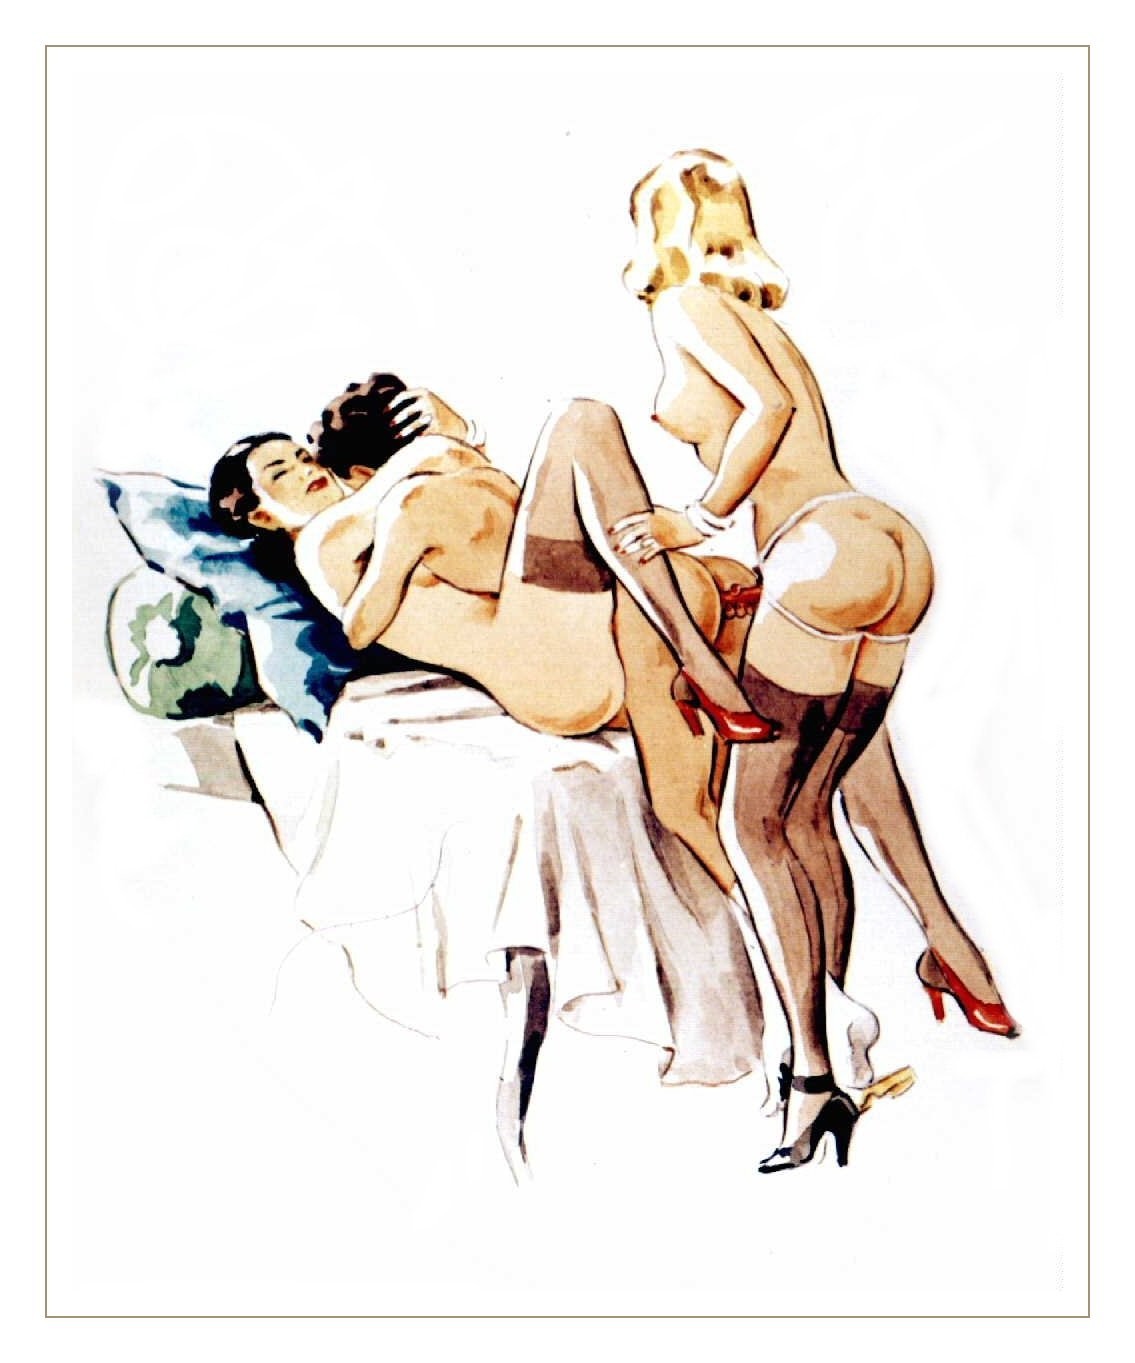 Vintage erotic cartoon sex drawings